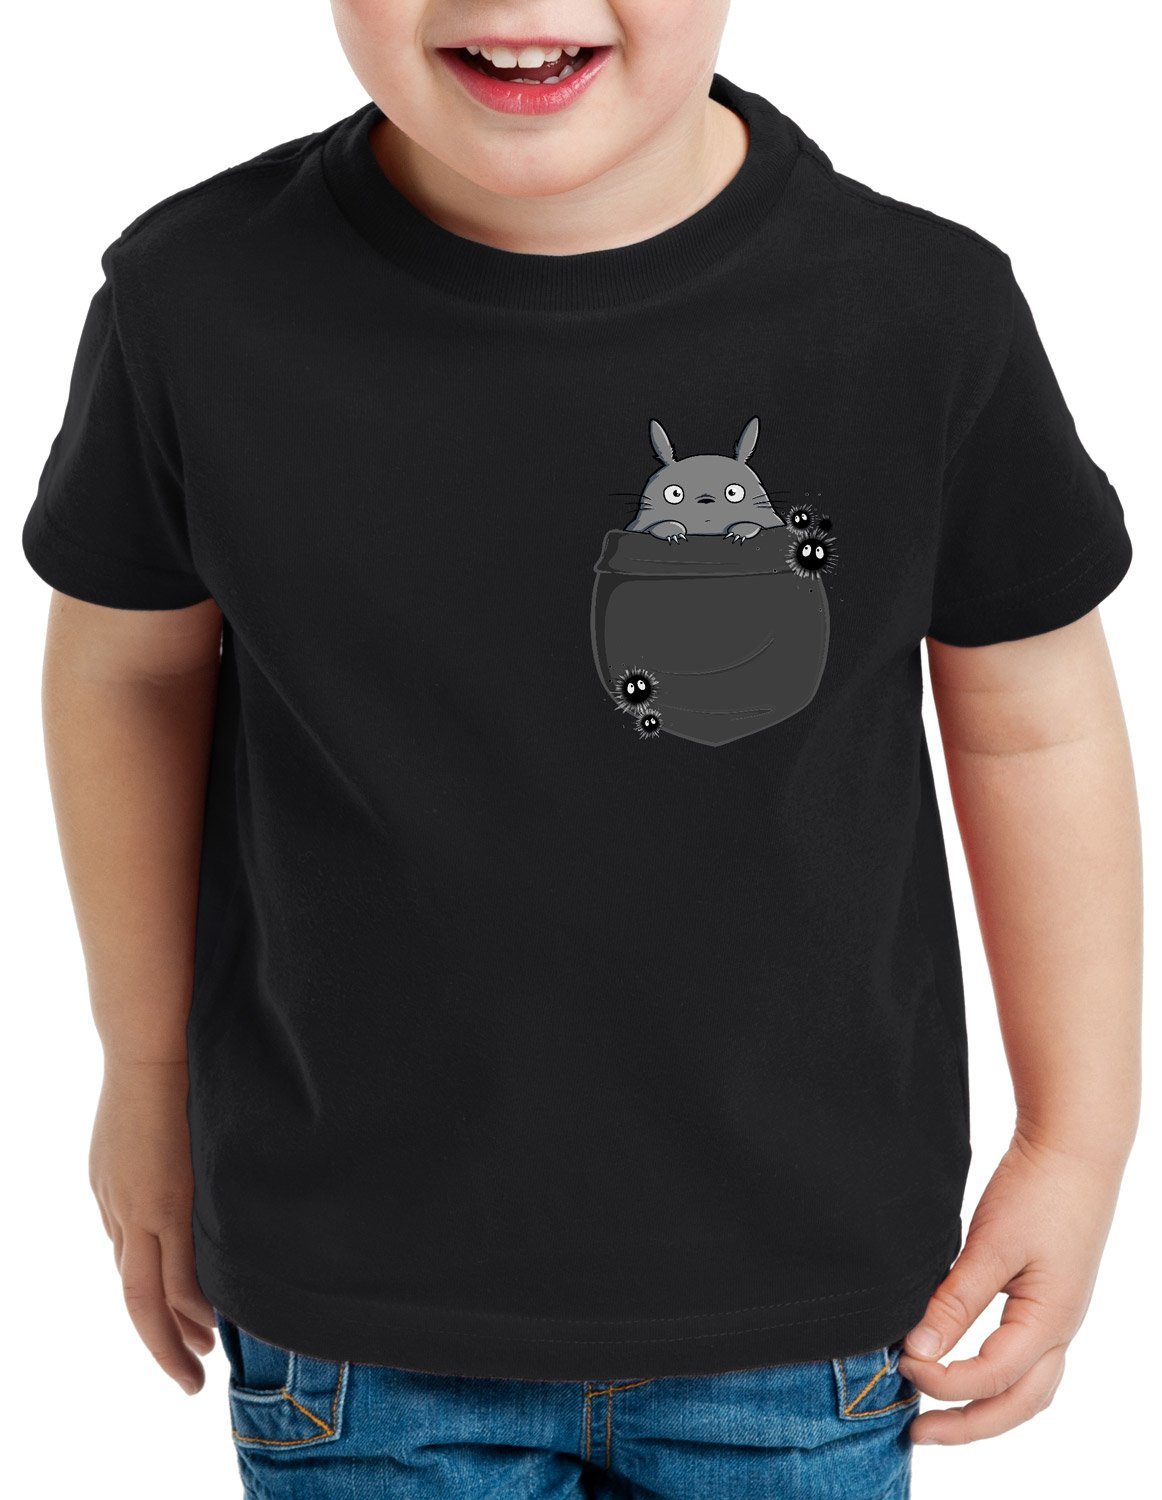 Print-Shirt Kinder tonari Brusttasche T-Shirt neko style3 anime mein schwarz no nachbar Totoro